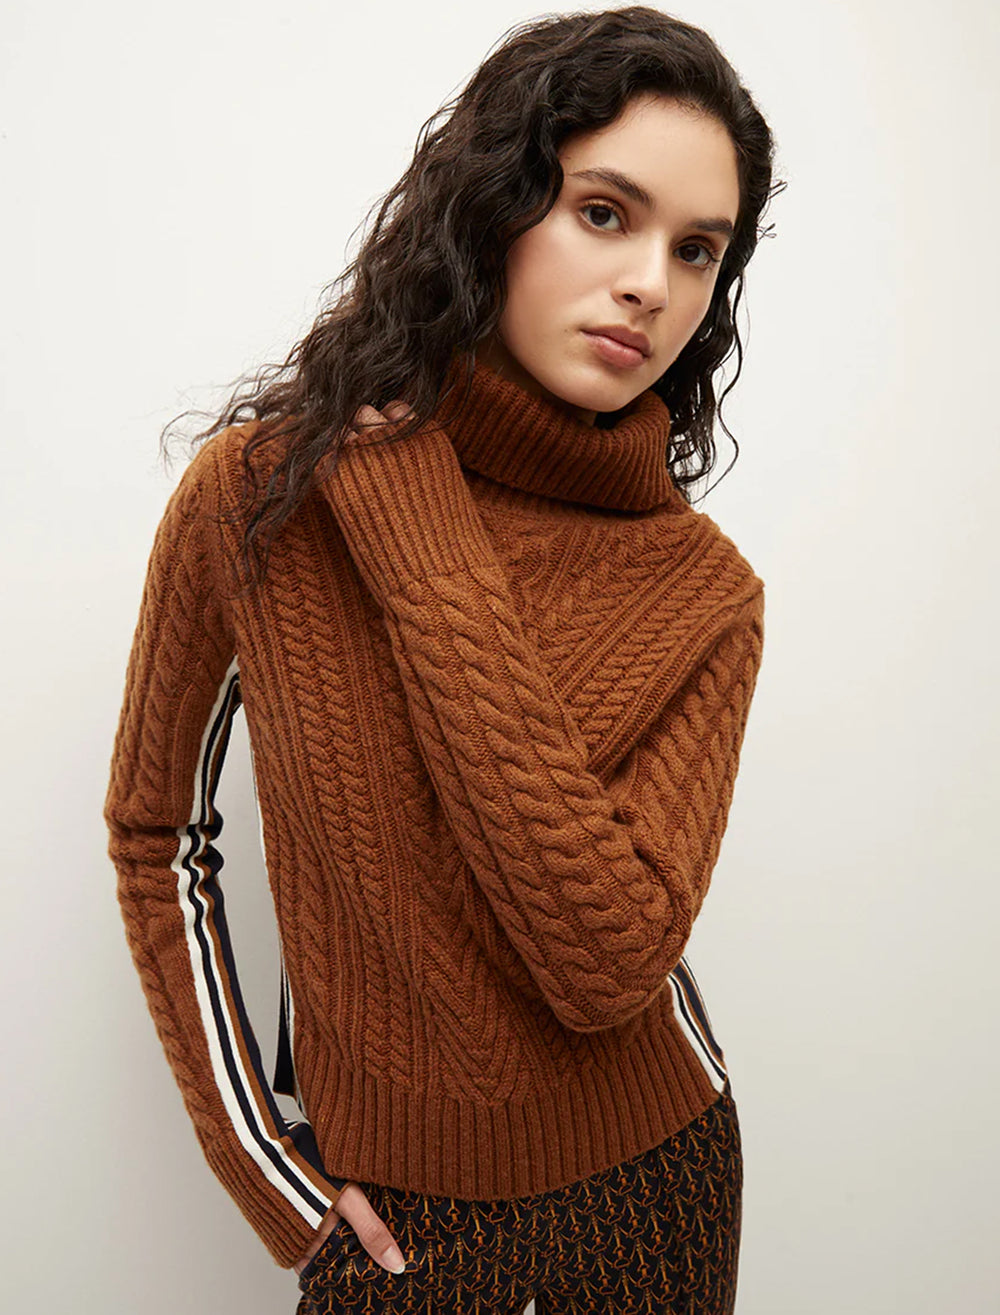 Model wearing Veronica Beard's maril sweater in dark ochre.